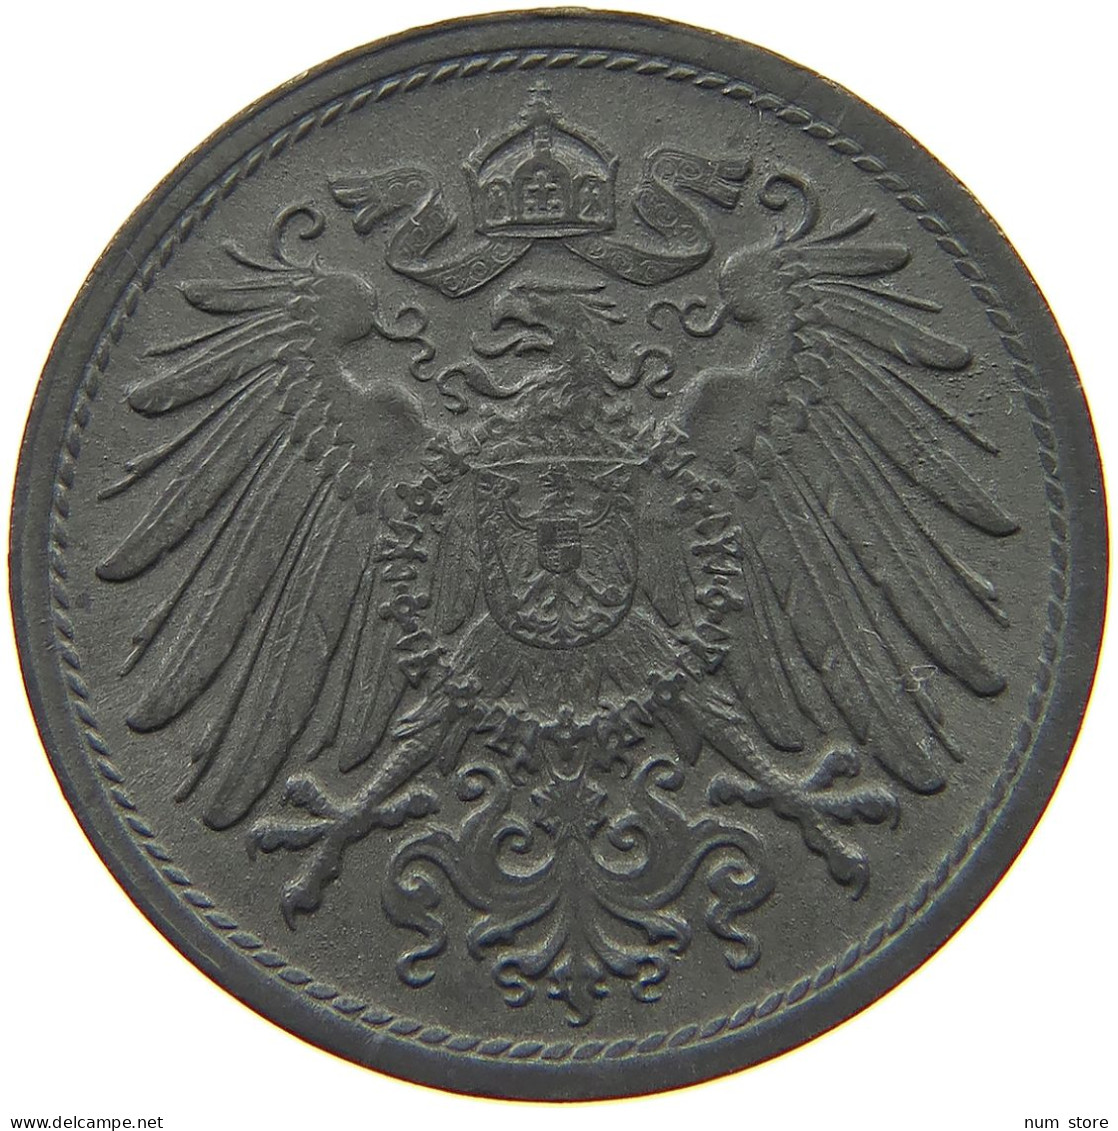 DEUTSCHES REICH 10 PFENNIG 1919  #c084 0847 - 10 Rentenpfennig & 10 Reichspfennig